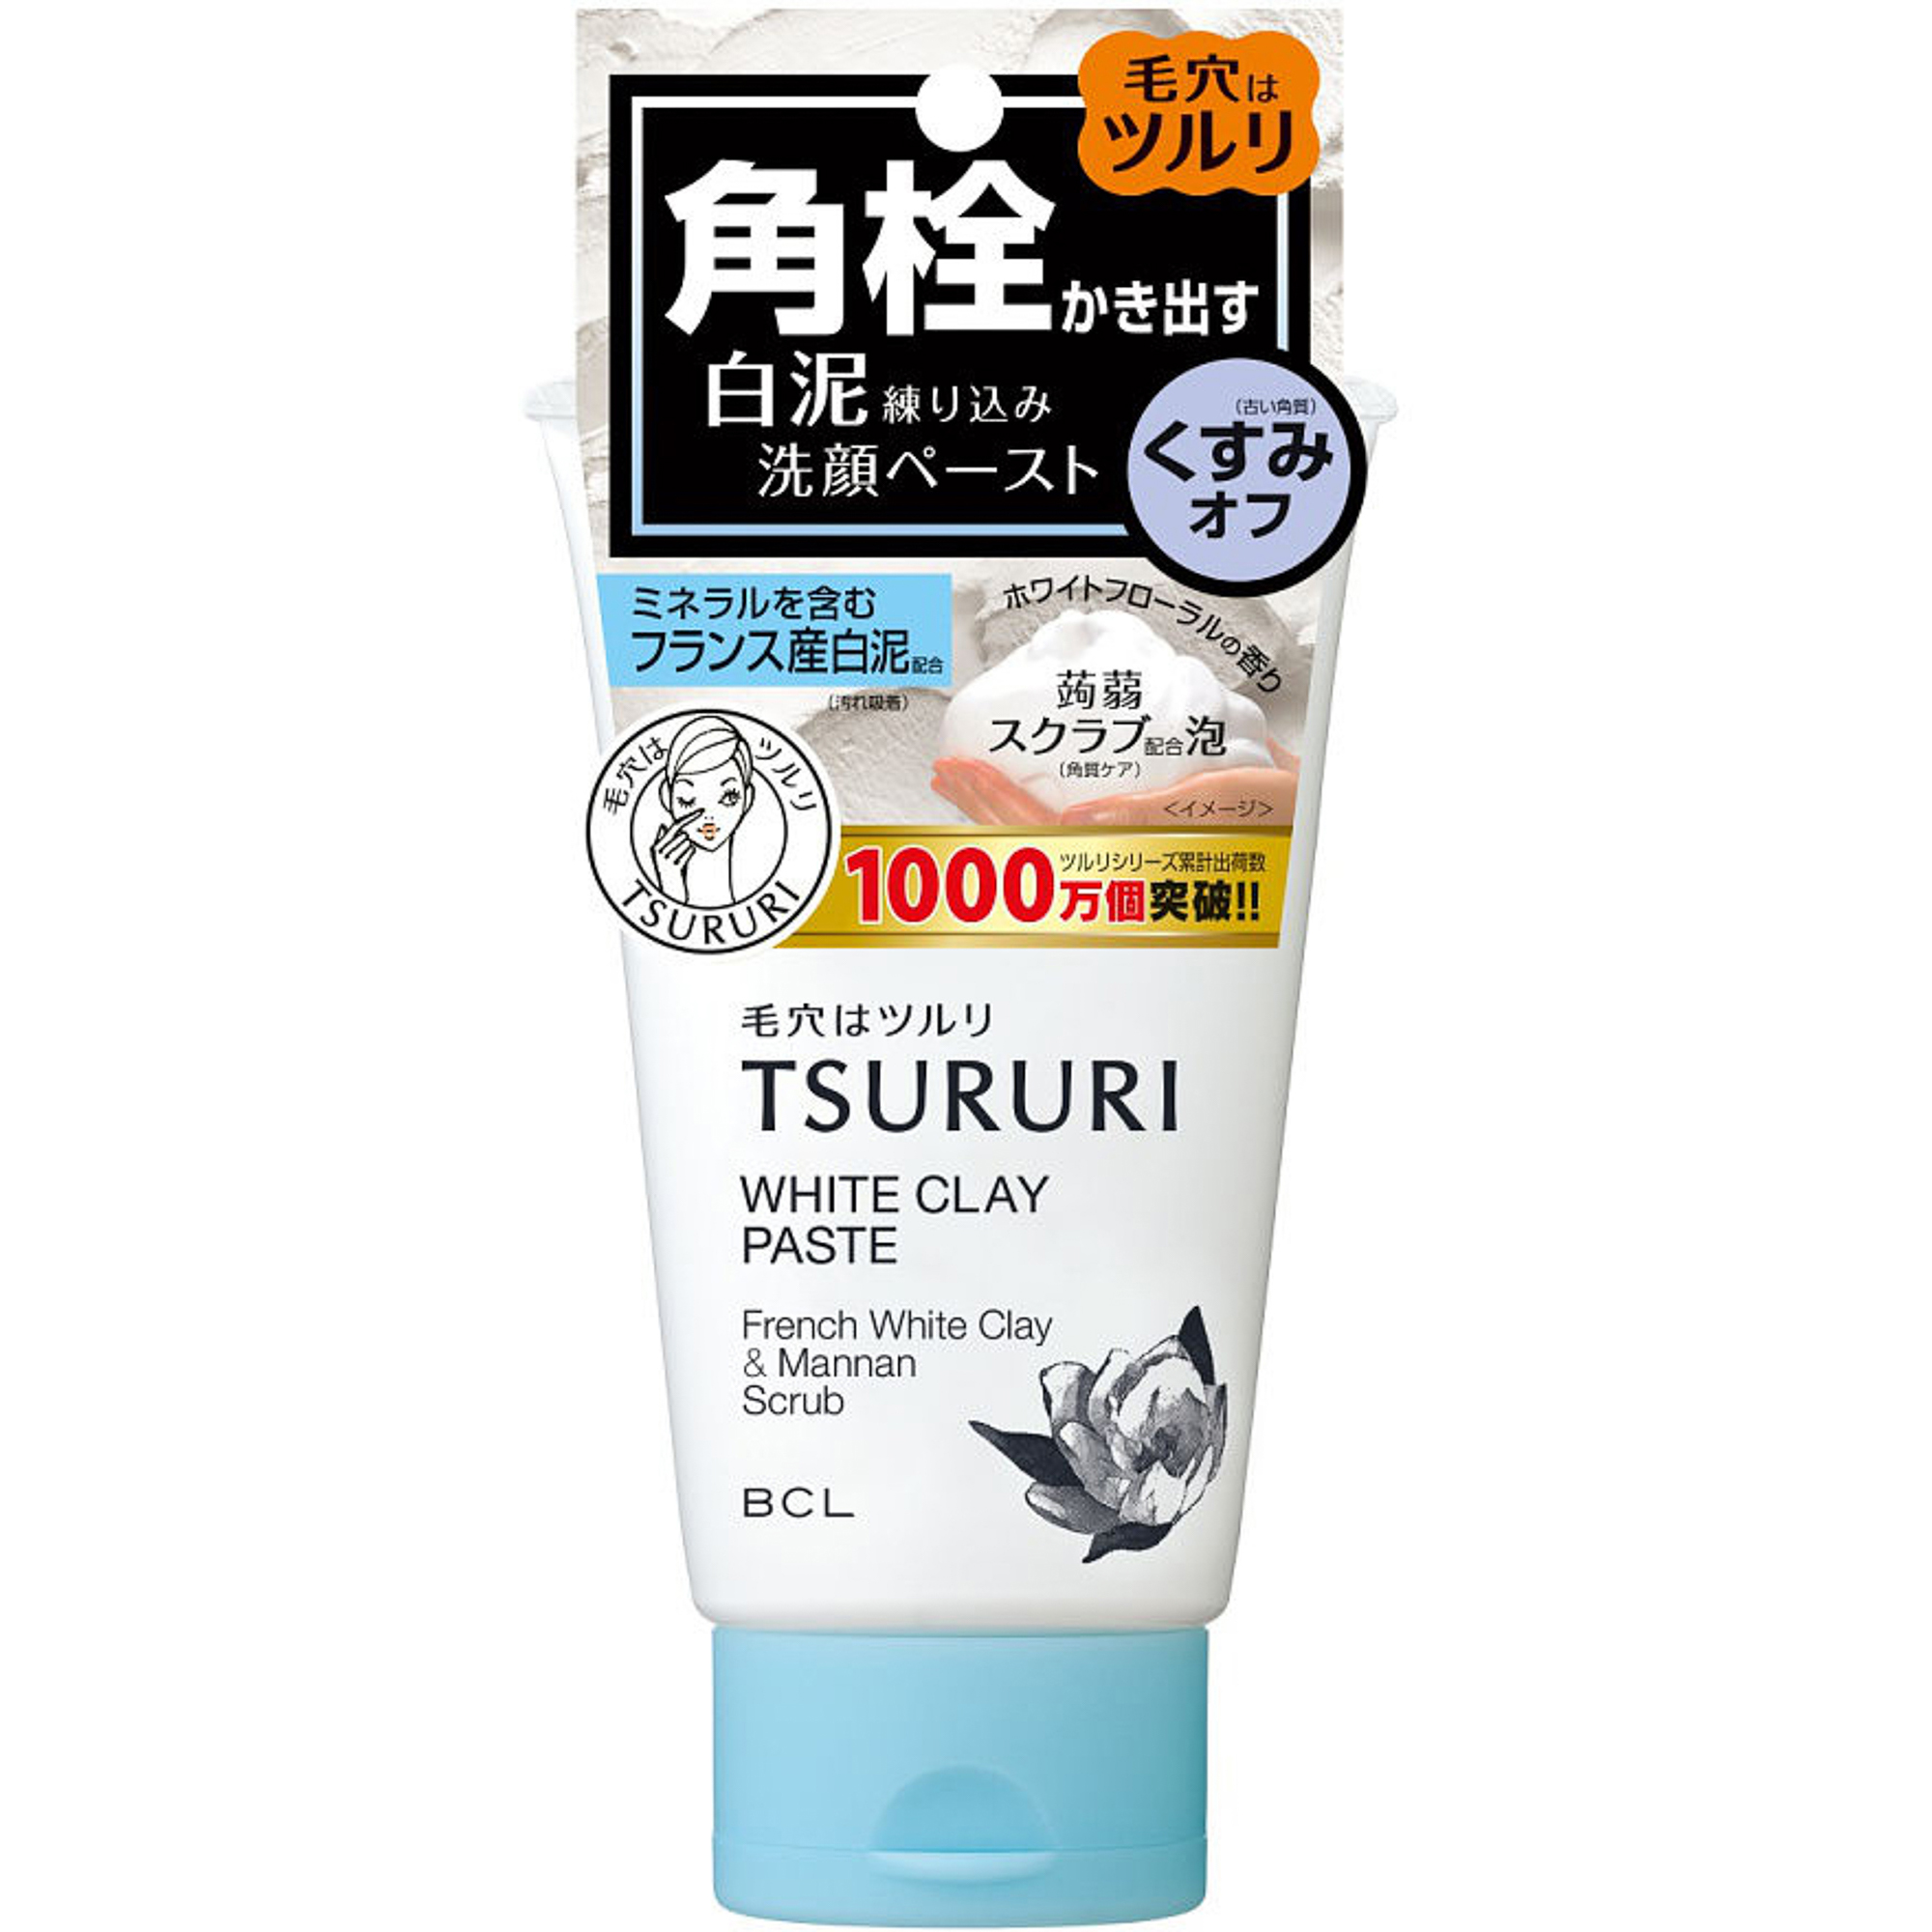 Пенка-скраб Tsururi для глубокого очищения кожи с французской белой глиной и японским маннаном 120 г скраб для лица витаминный 110 мл